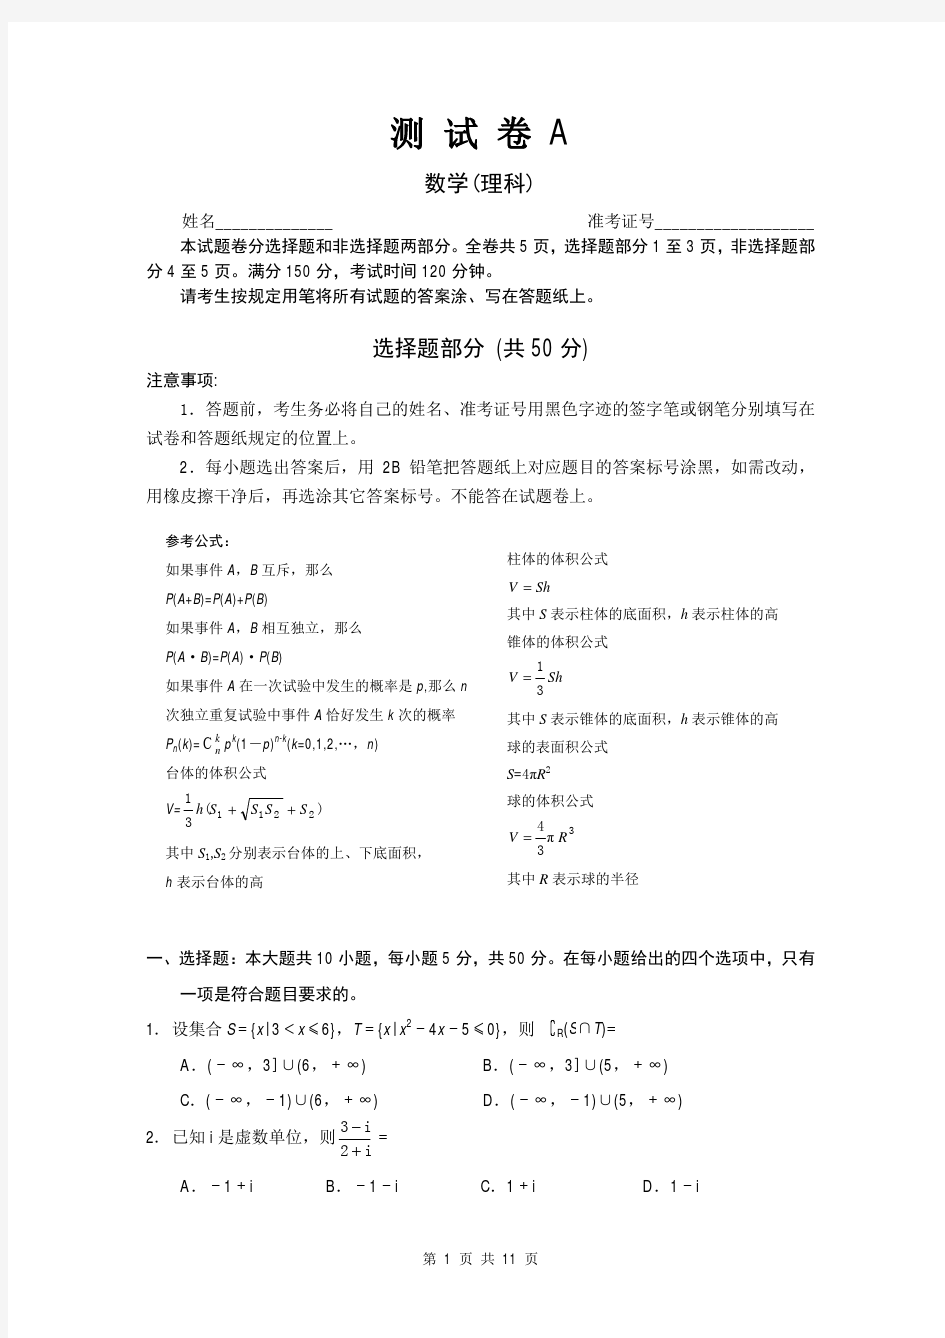 数学理卷·2014届浙江省教育考试院高三高考抽测(2013.12)